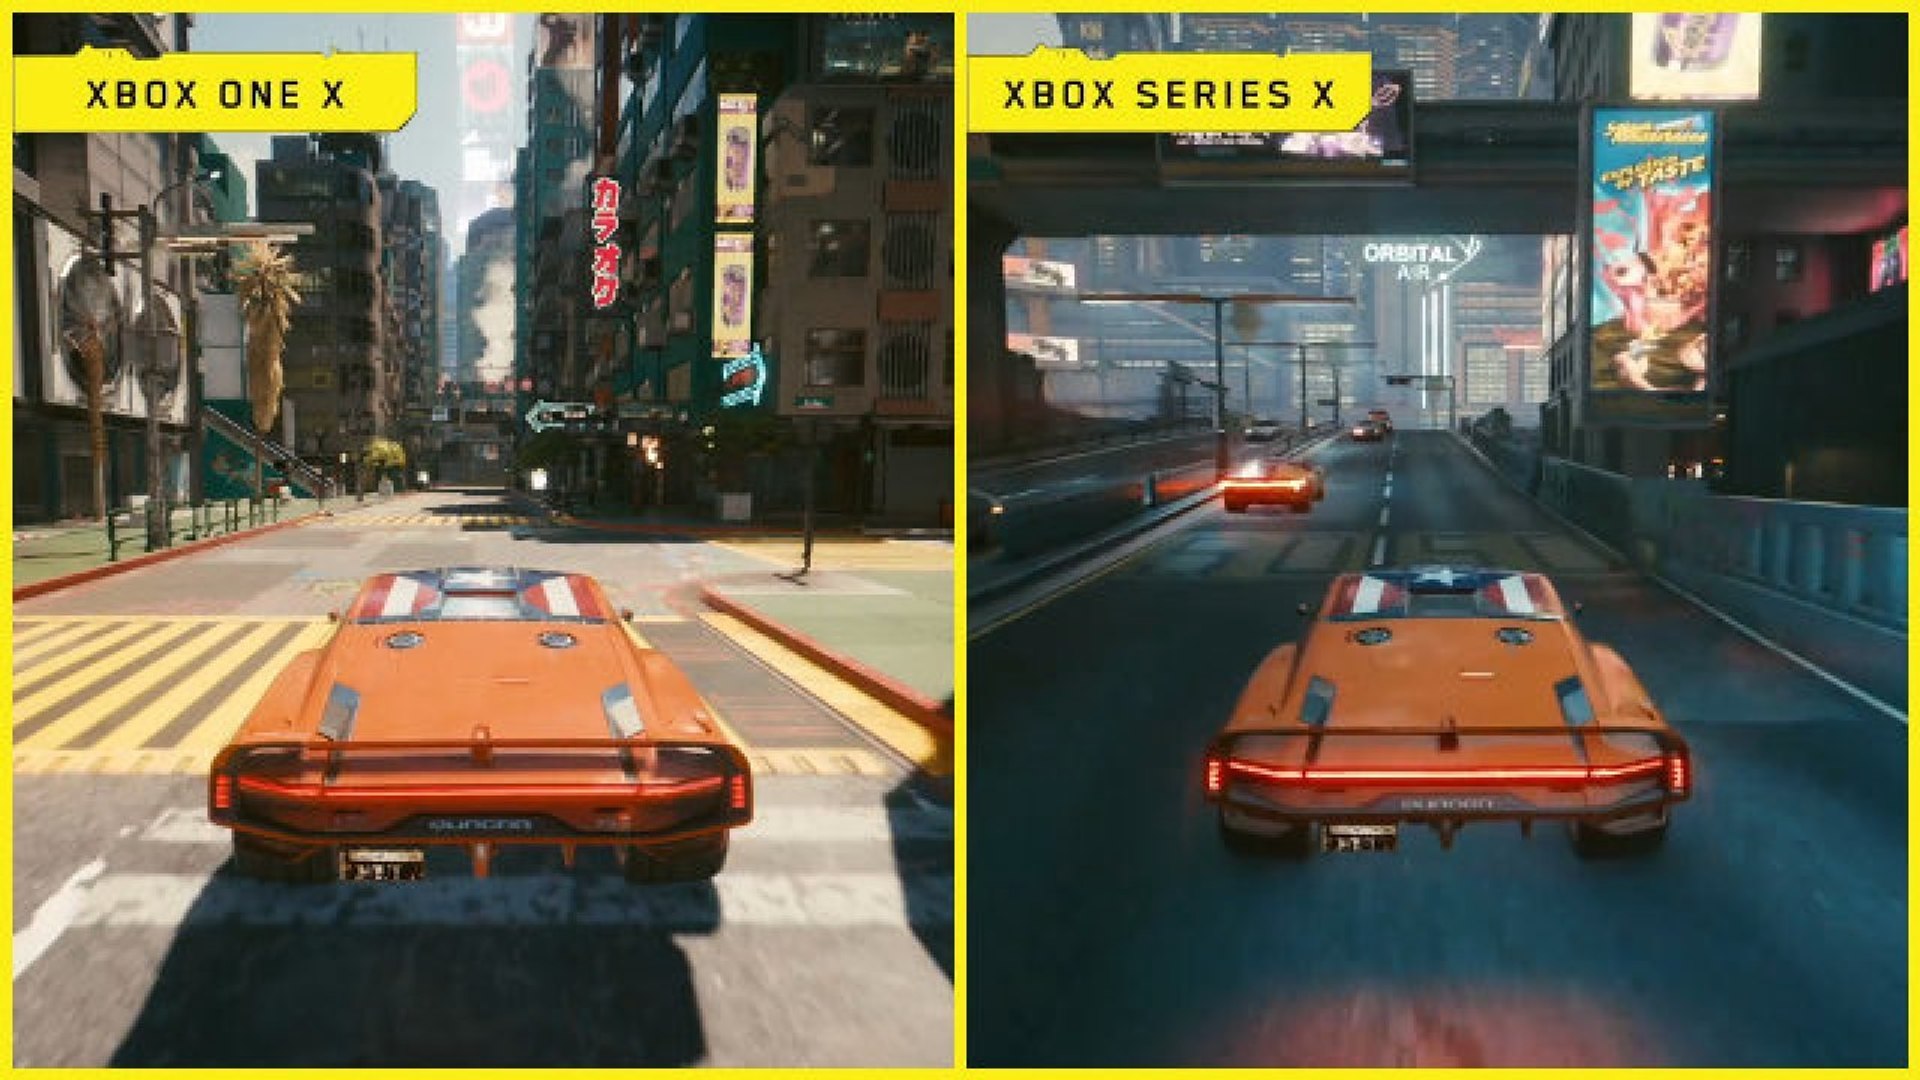 Cyberpunk 2077 - Xbox One X vs Xbox Series X footage